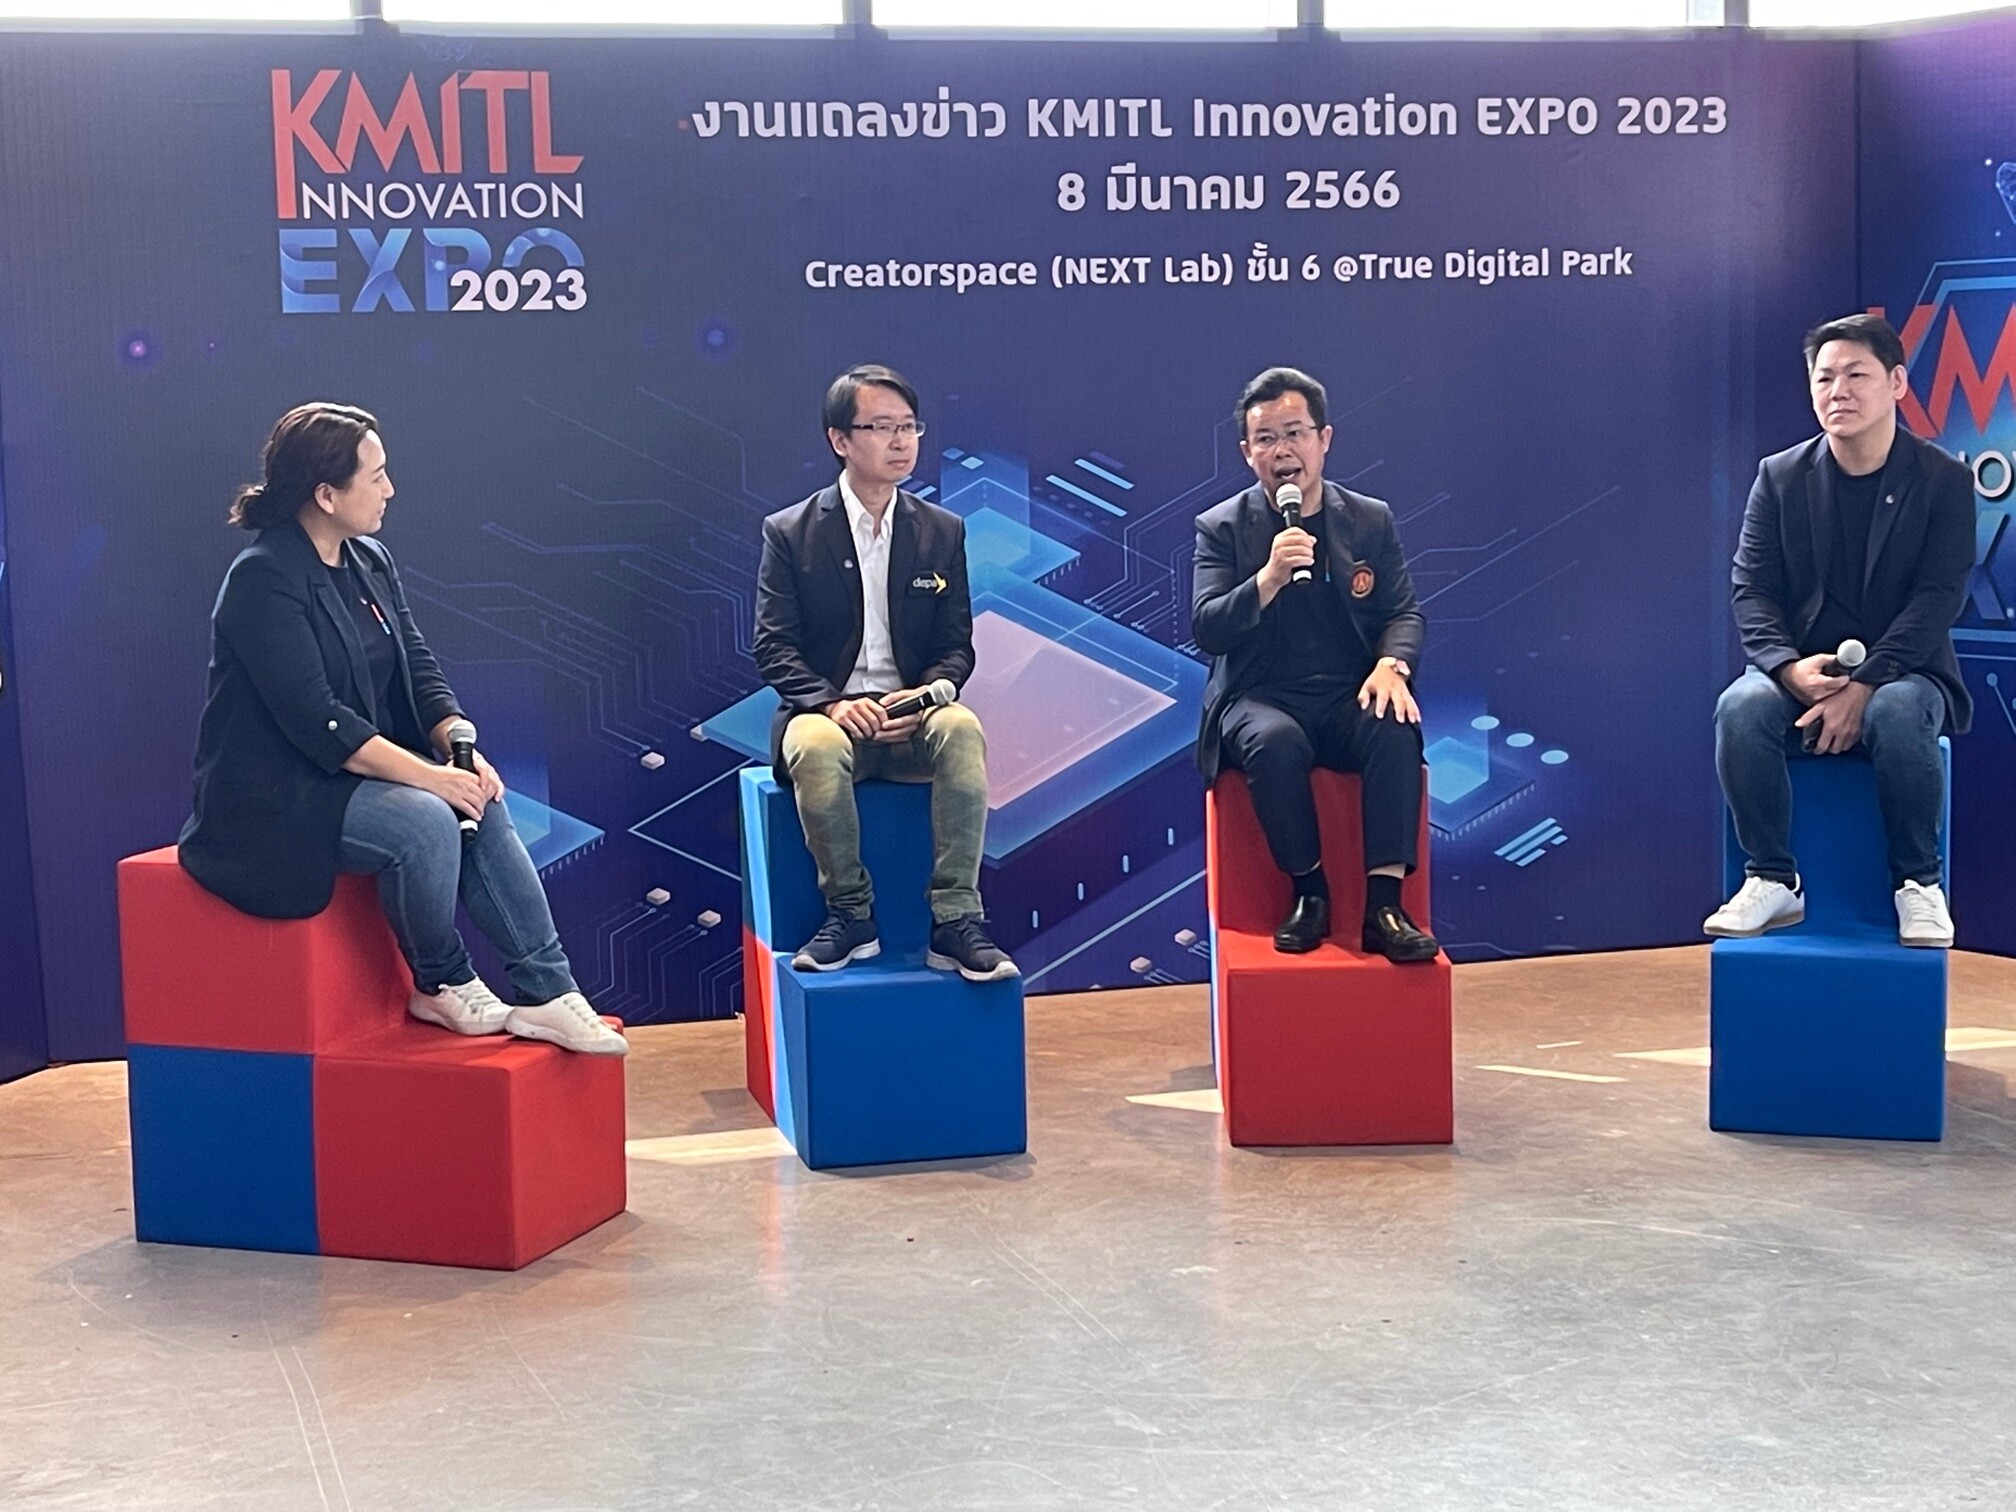 สจล. หนุนนวัตกรรมไทยสู่ระดับโลก เตรียมจัดงาน KMITL INNOVATION EXPO 2023 วันที่ 27-29 เมย.นี้ โชว์พลังสิ่งประดิษฐ์ฝีมือคนไทย 1,111 ชิ้น เผยโฉม 'แบตเตอรี่กราฟีน' ครั้งแรกในประเทศไทย